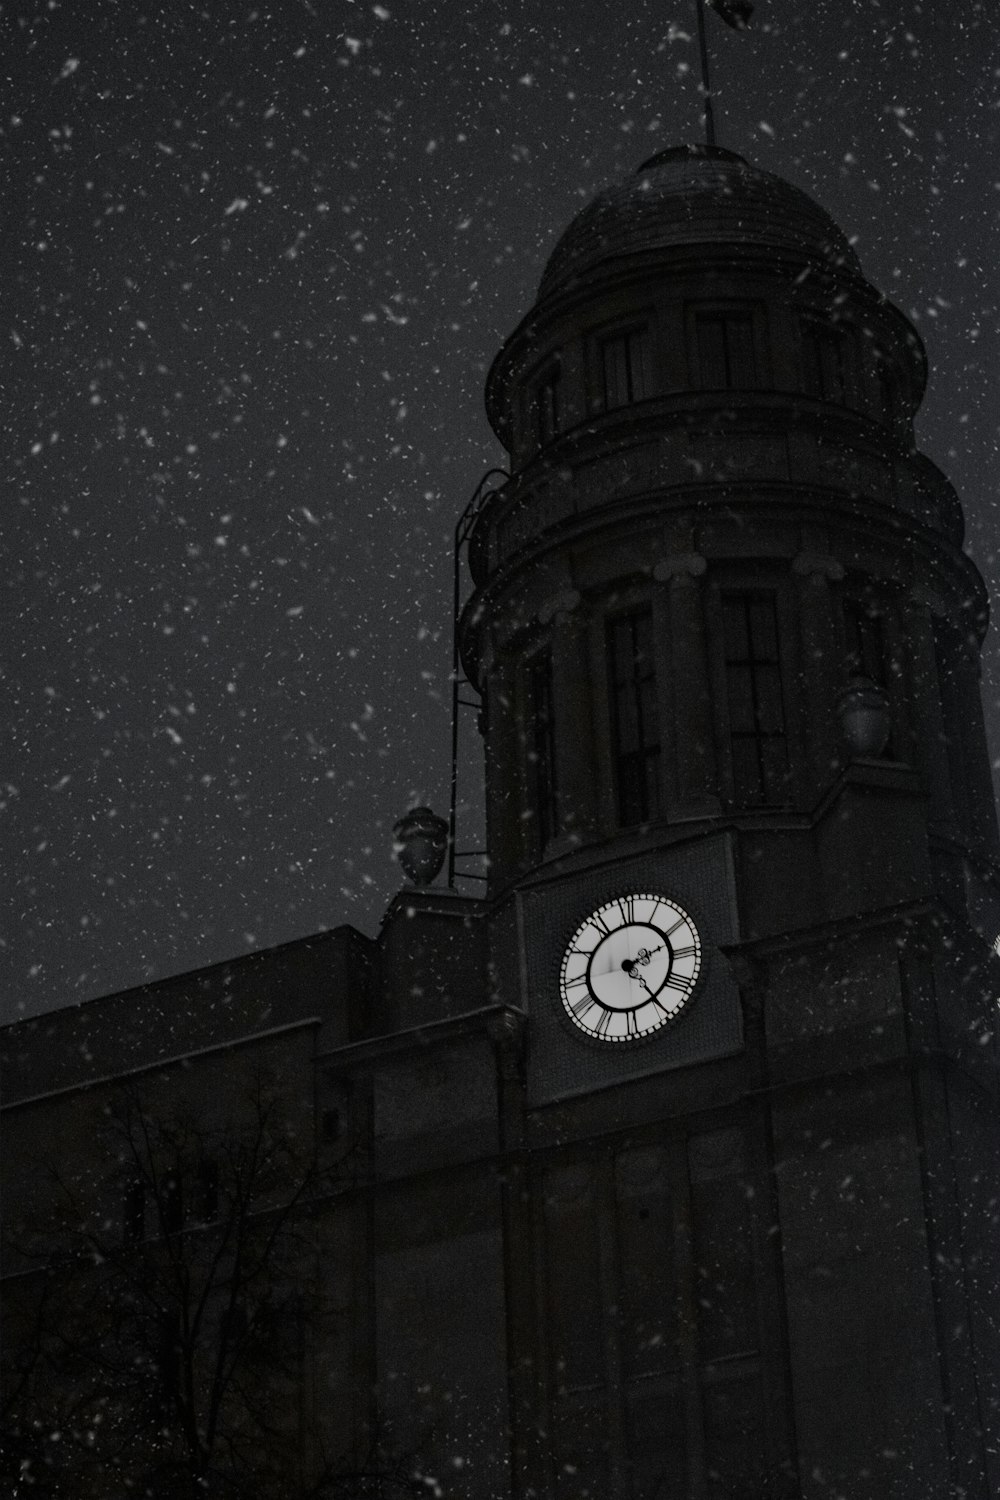 une horloge sur un bâtiment dans la neige